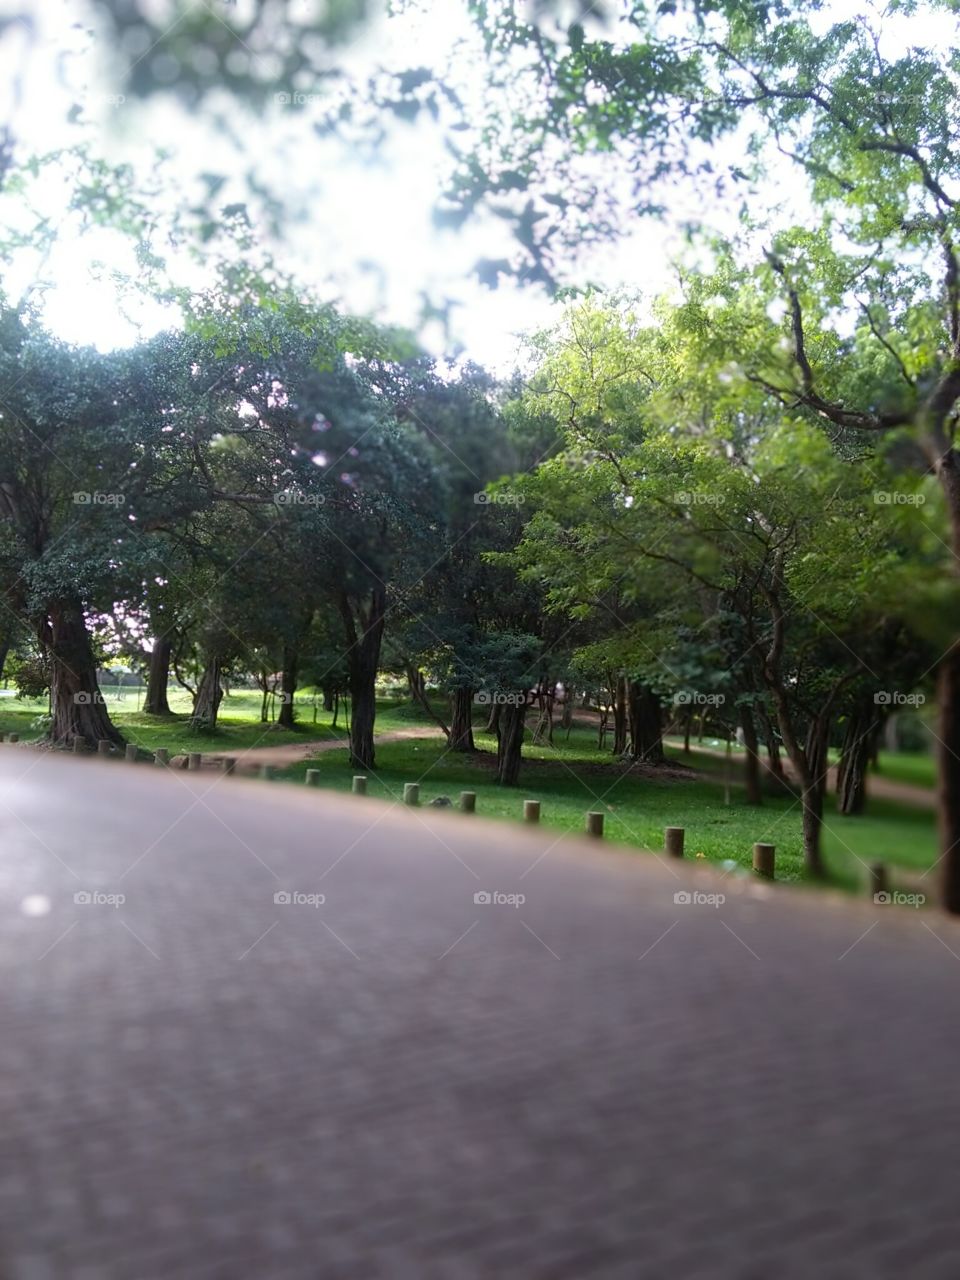 A park